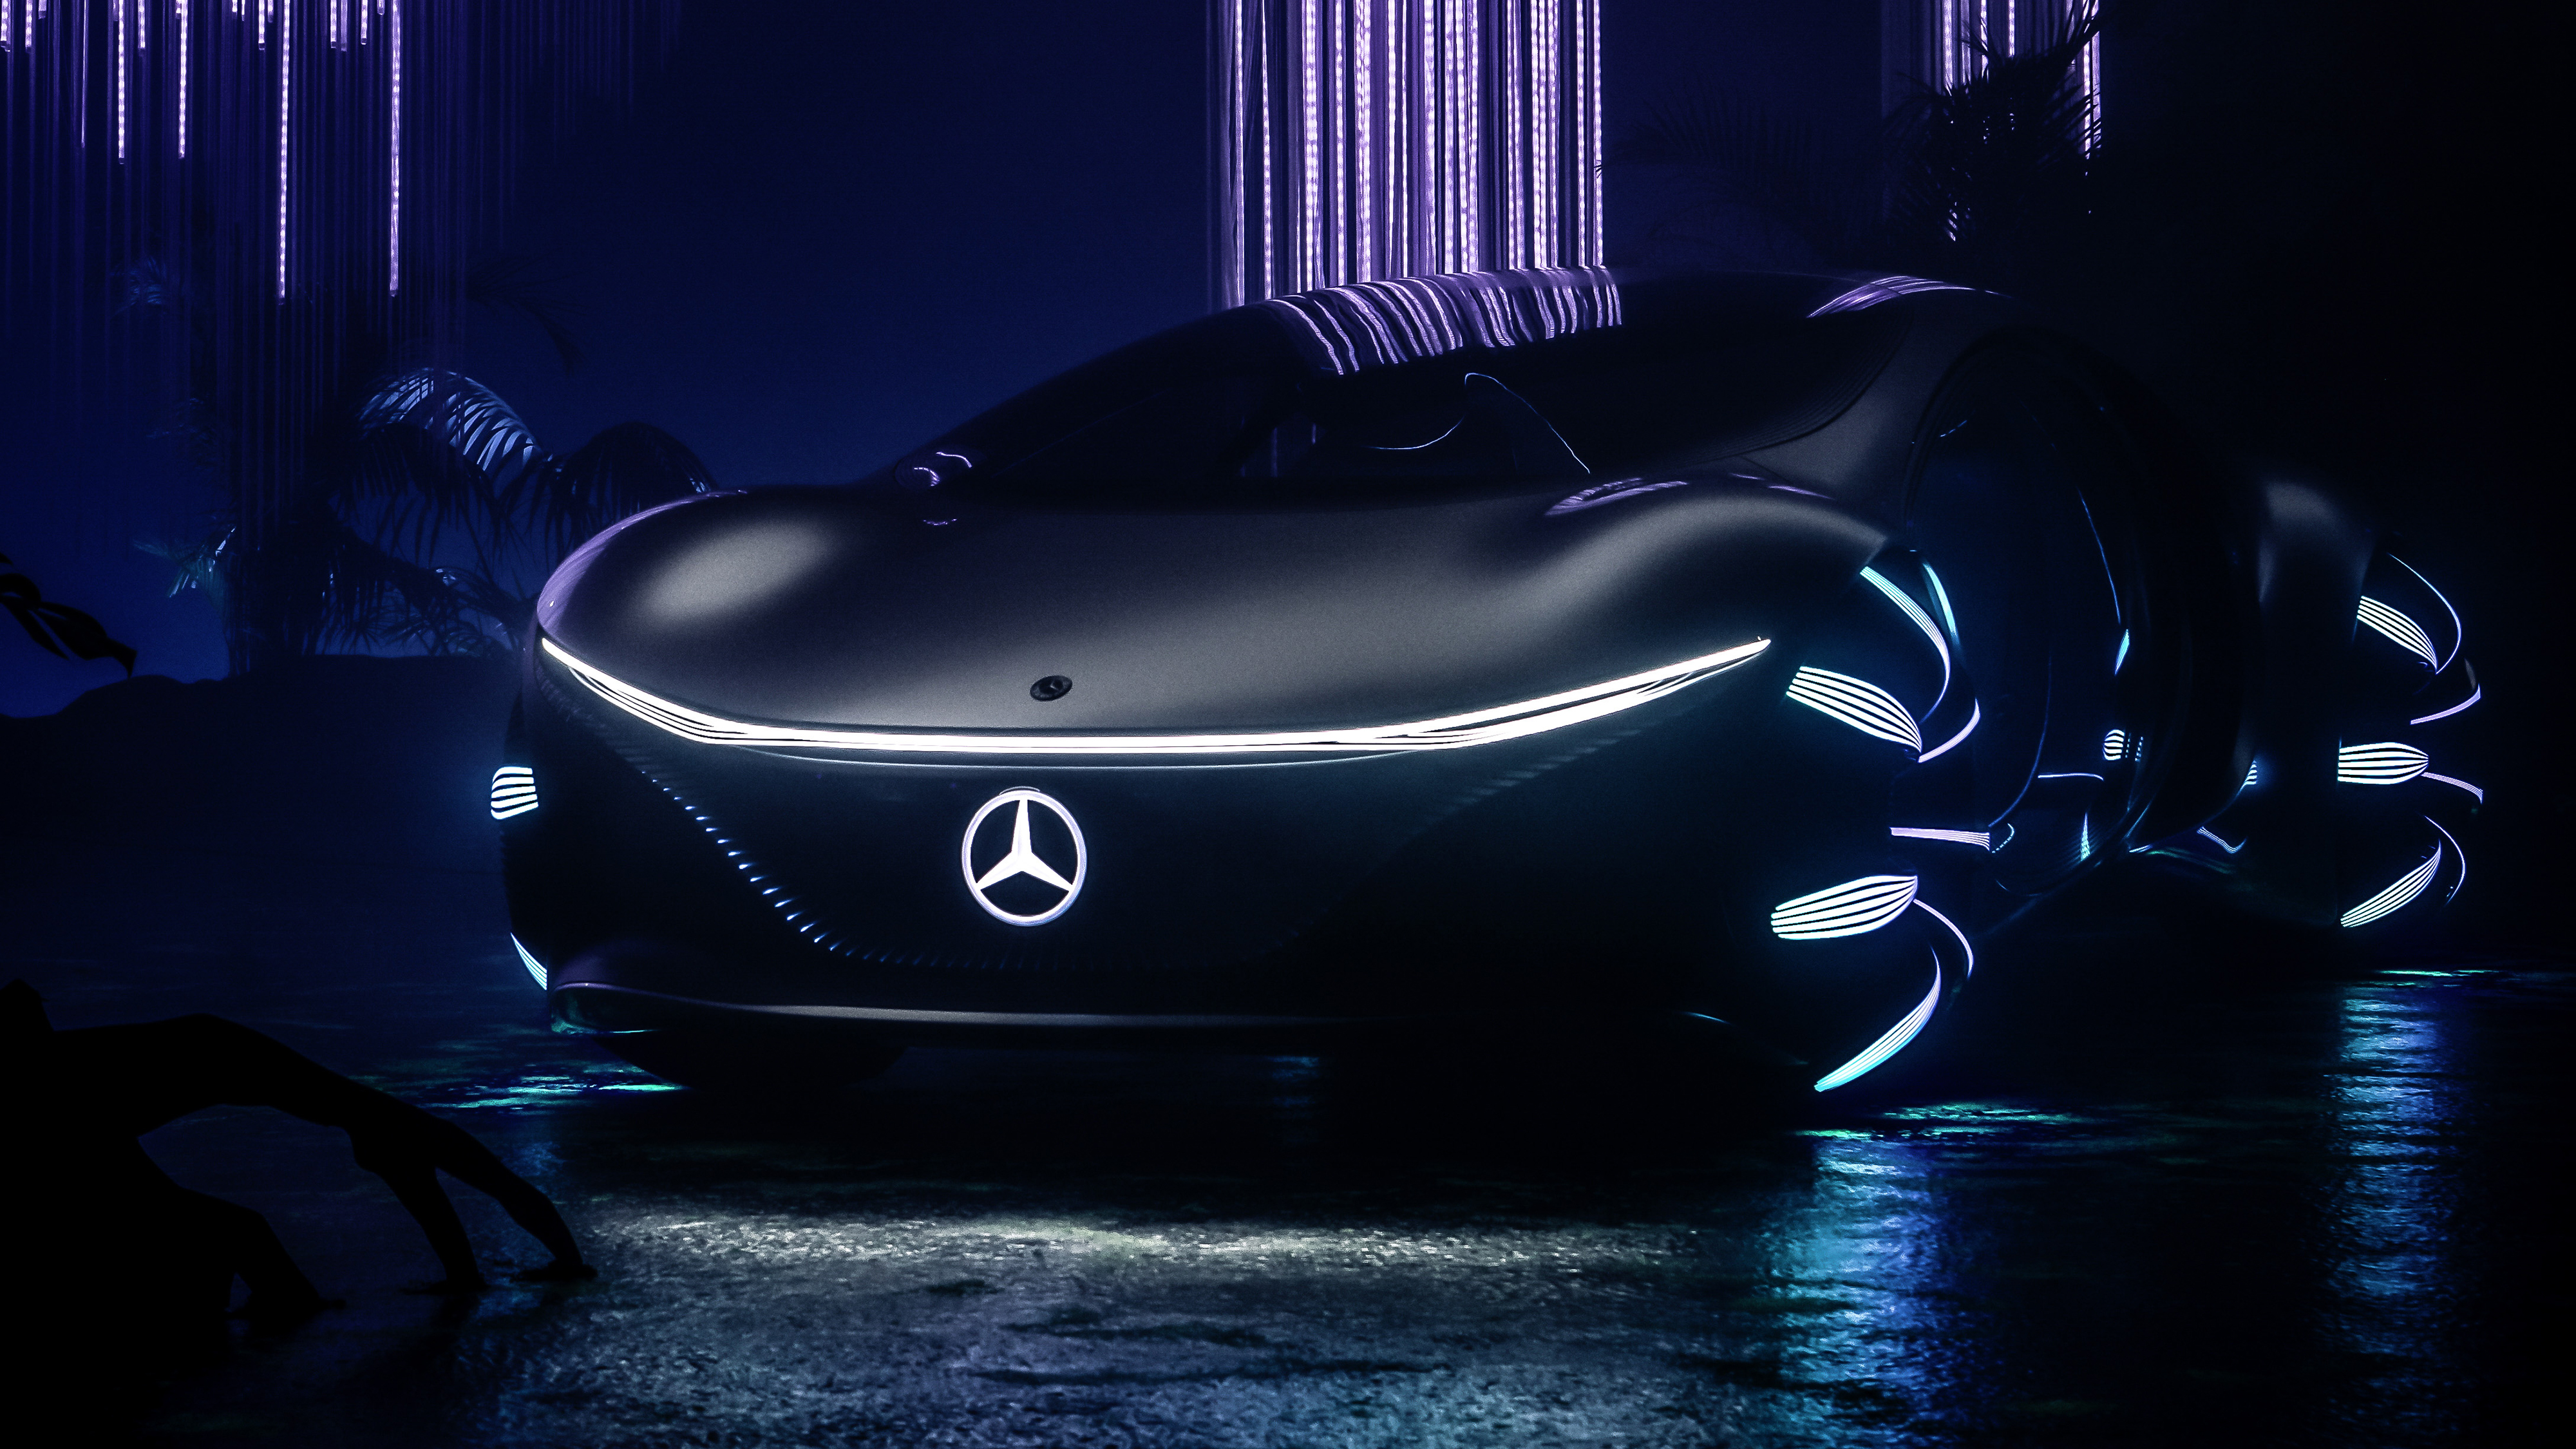 Mercedes Vision Avtr , HD Wallpaper & Backgrounds